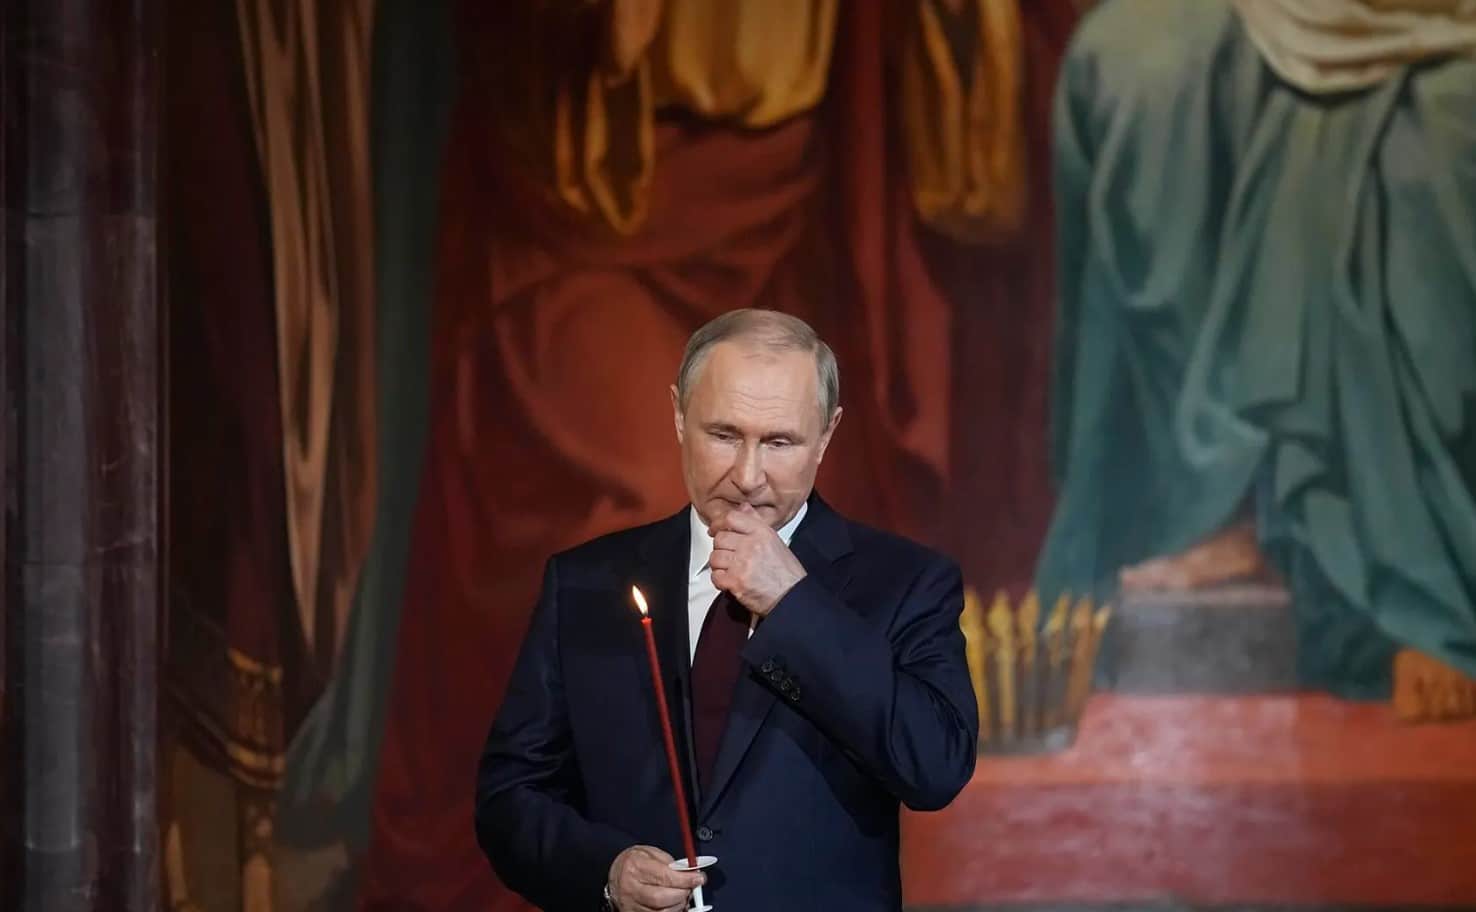 El grave error que nunca admitirá Putin sobre la invasión a Ucrania